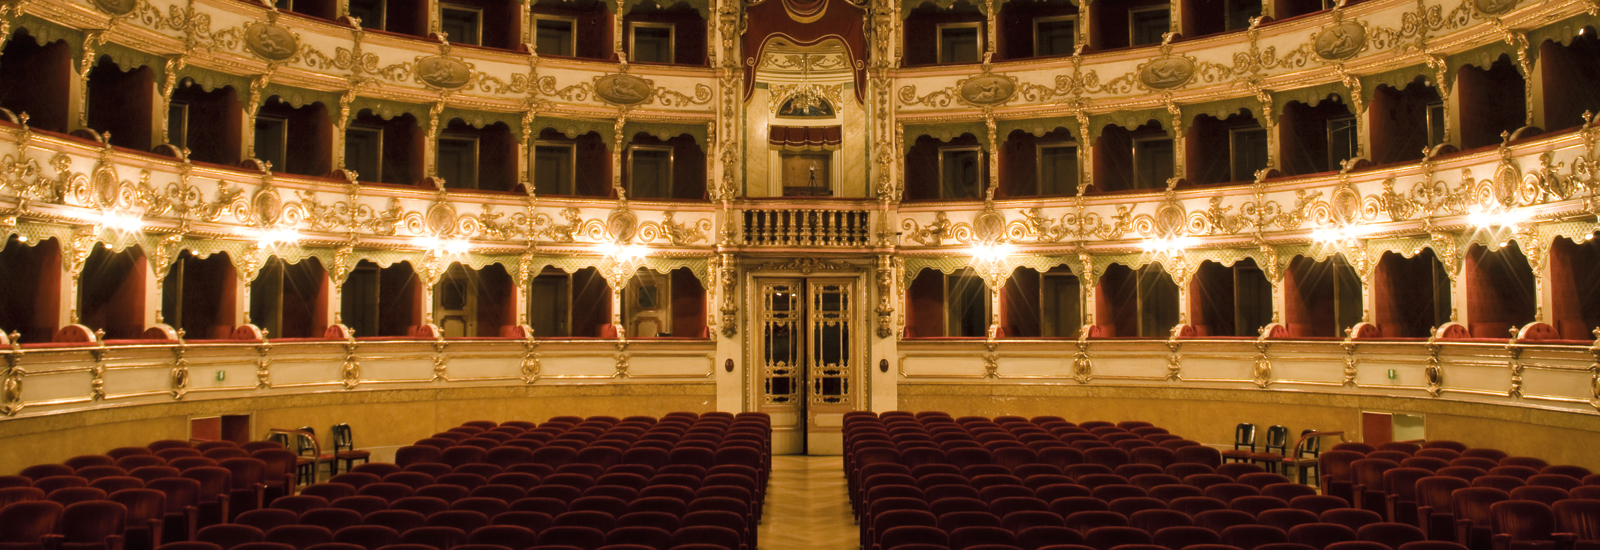 Teatro Rendano-